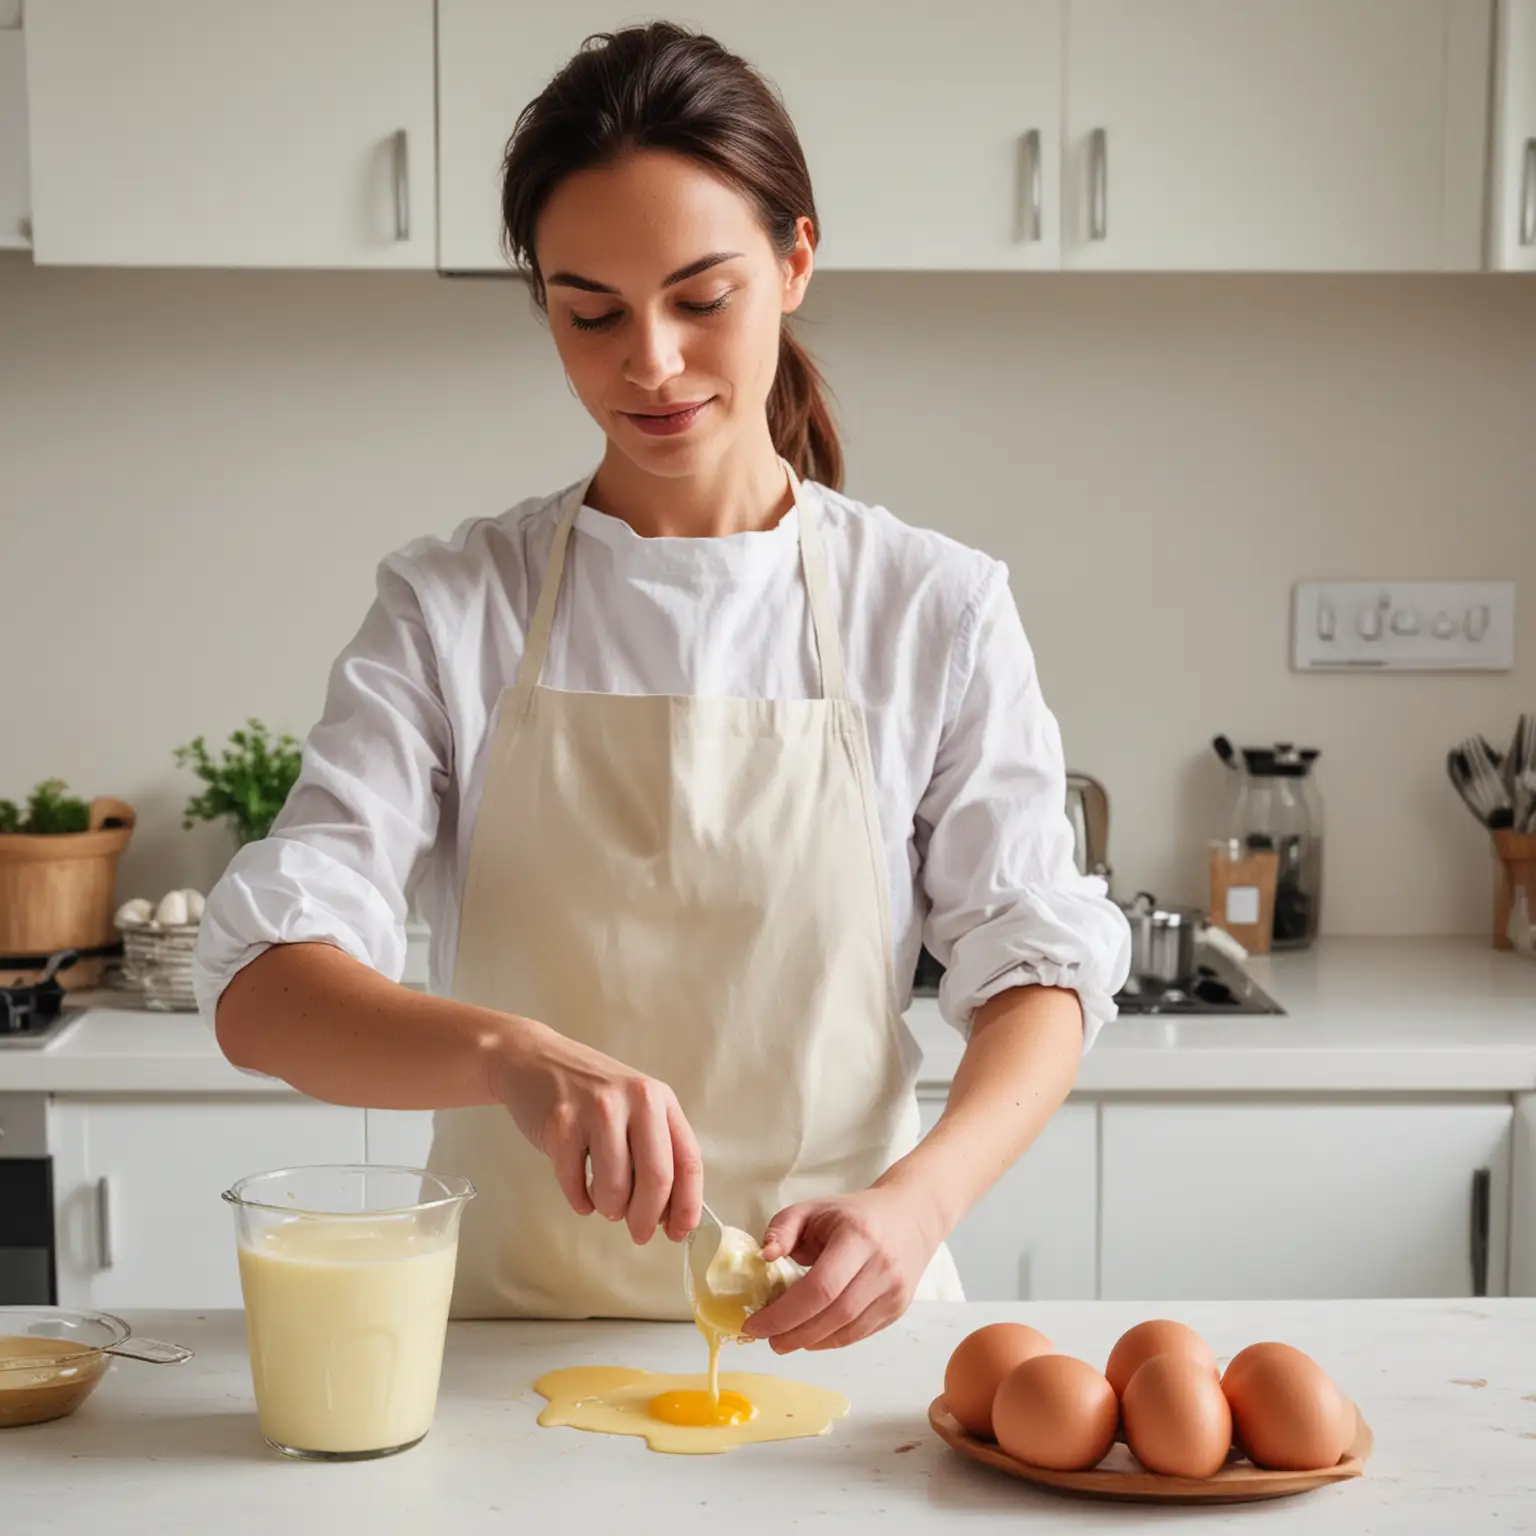 Женщина готовит майонез из яйиц на белой кухне
